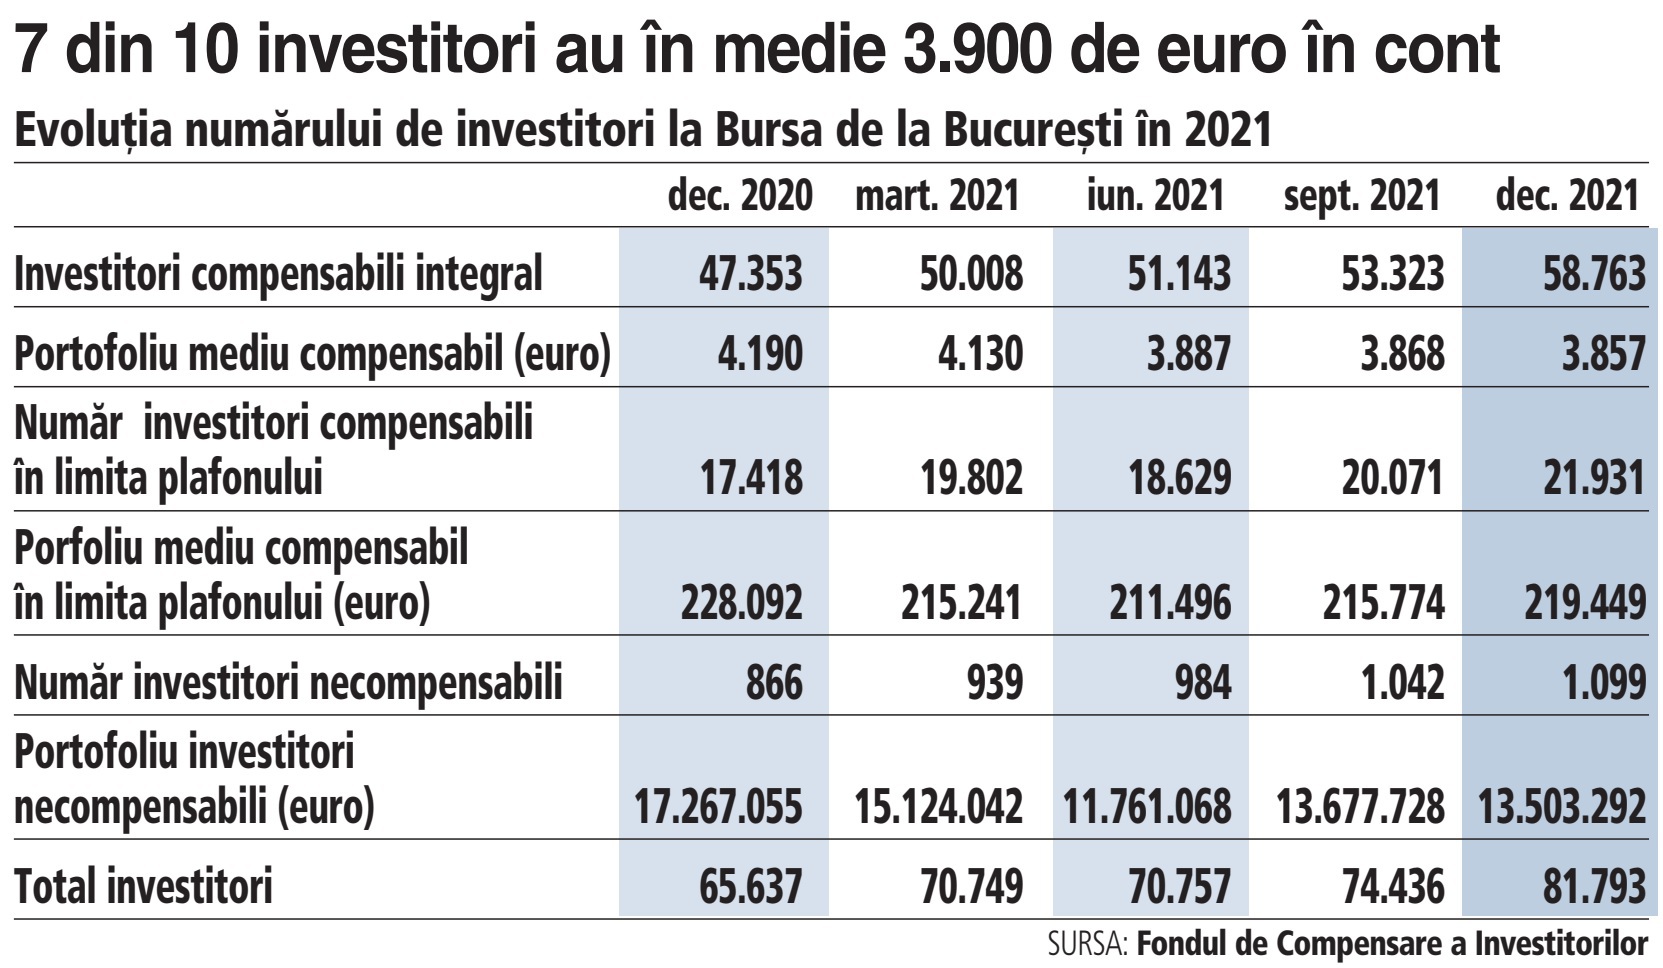 Bursa de Valori Bucureşti: 72% din investitorii în medie 3.900 de euro în cont